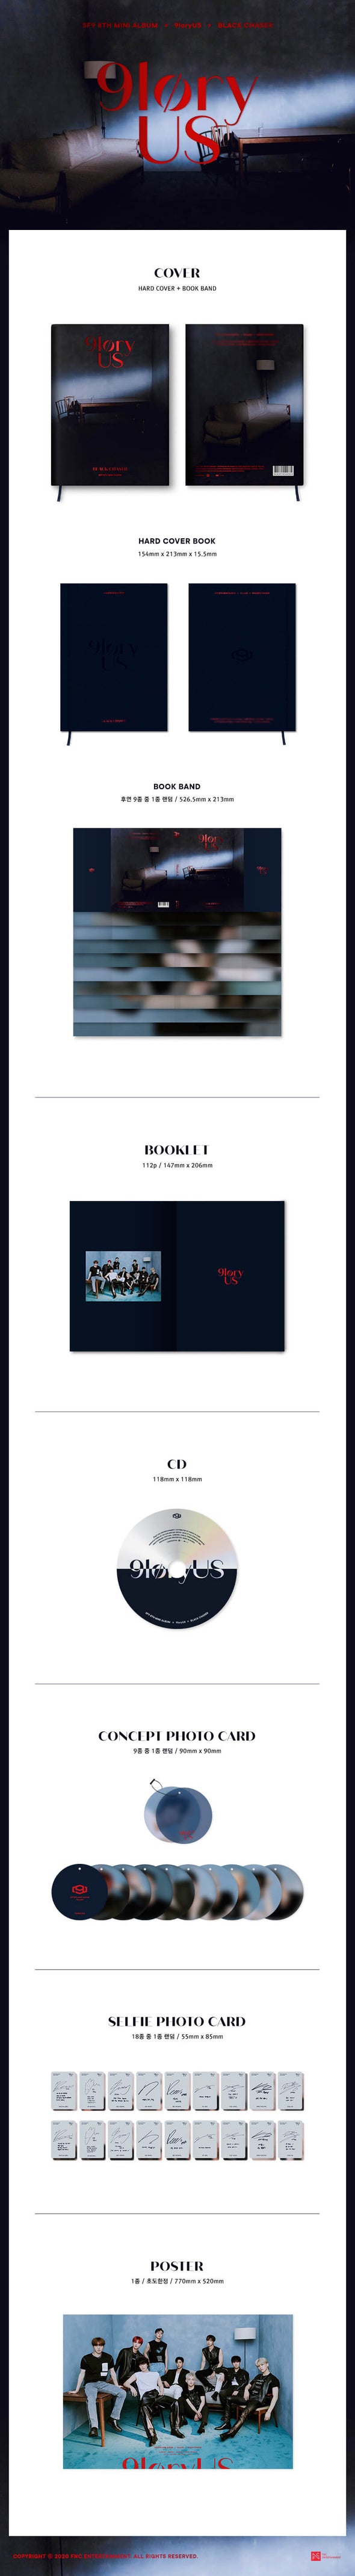 SF9 - 9loryUS 8th Mini Album (Random Version)